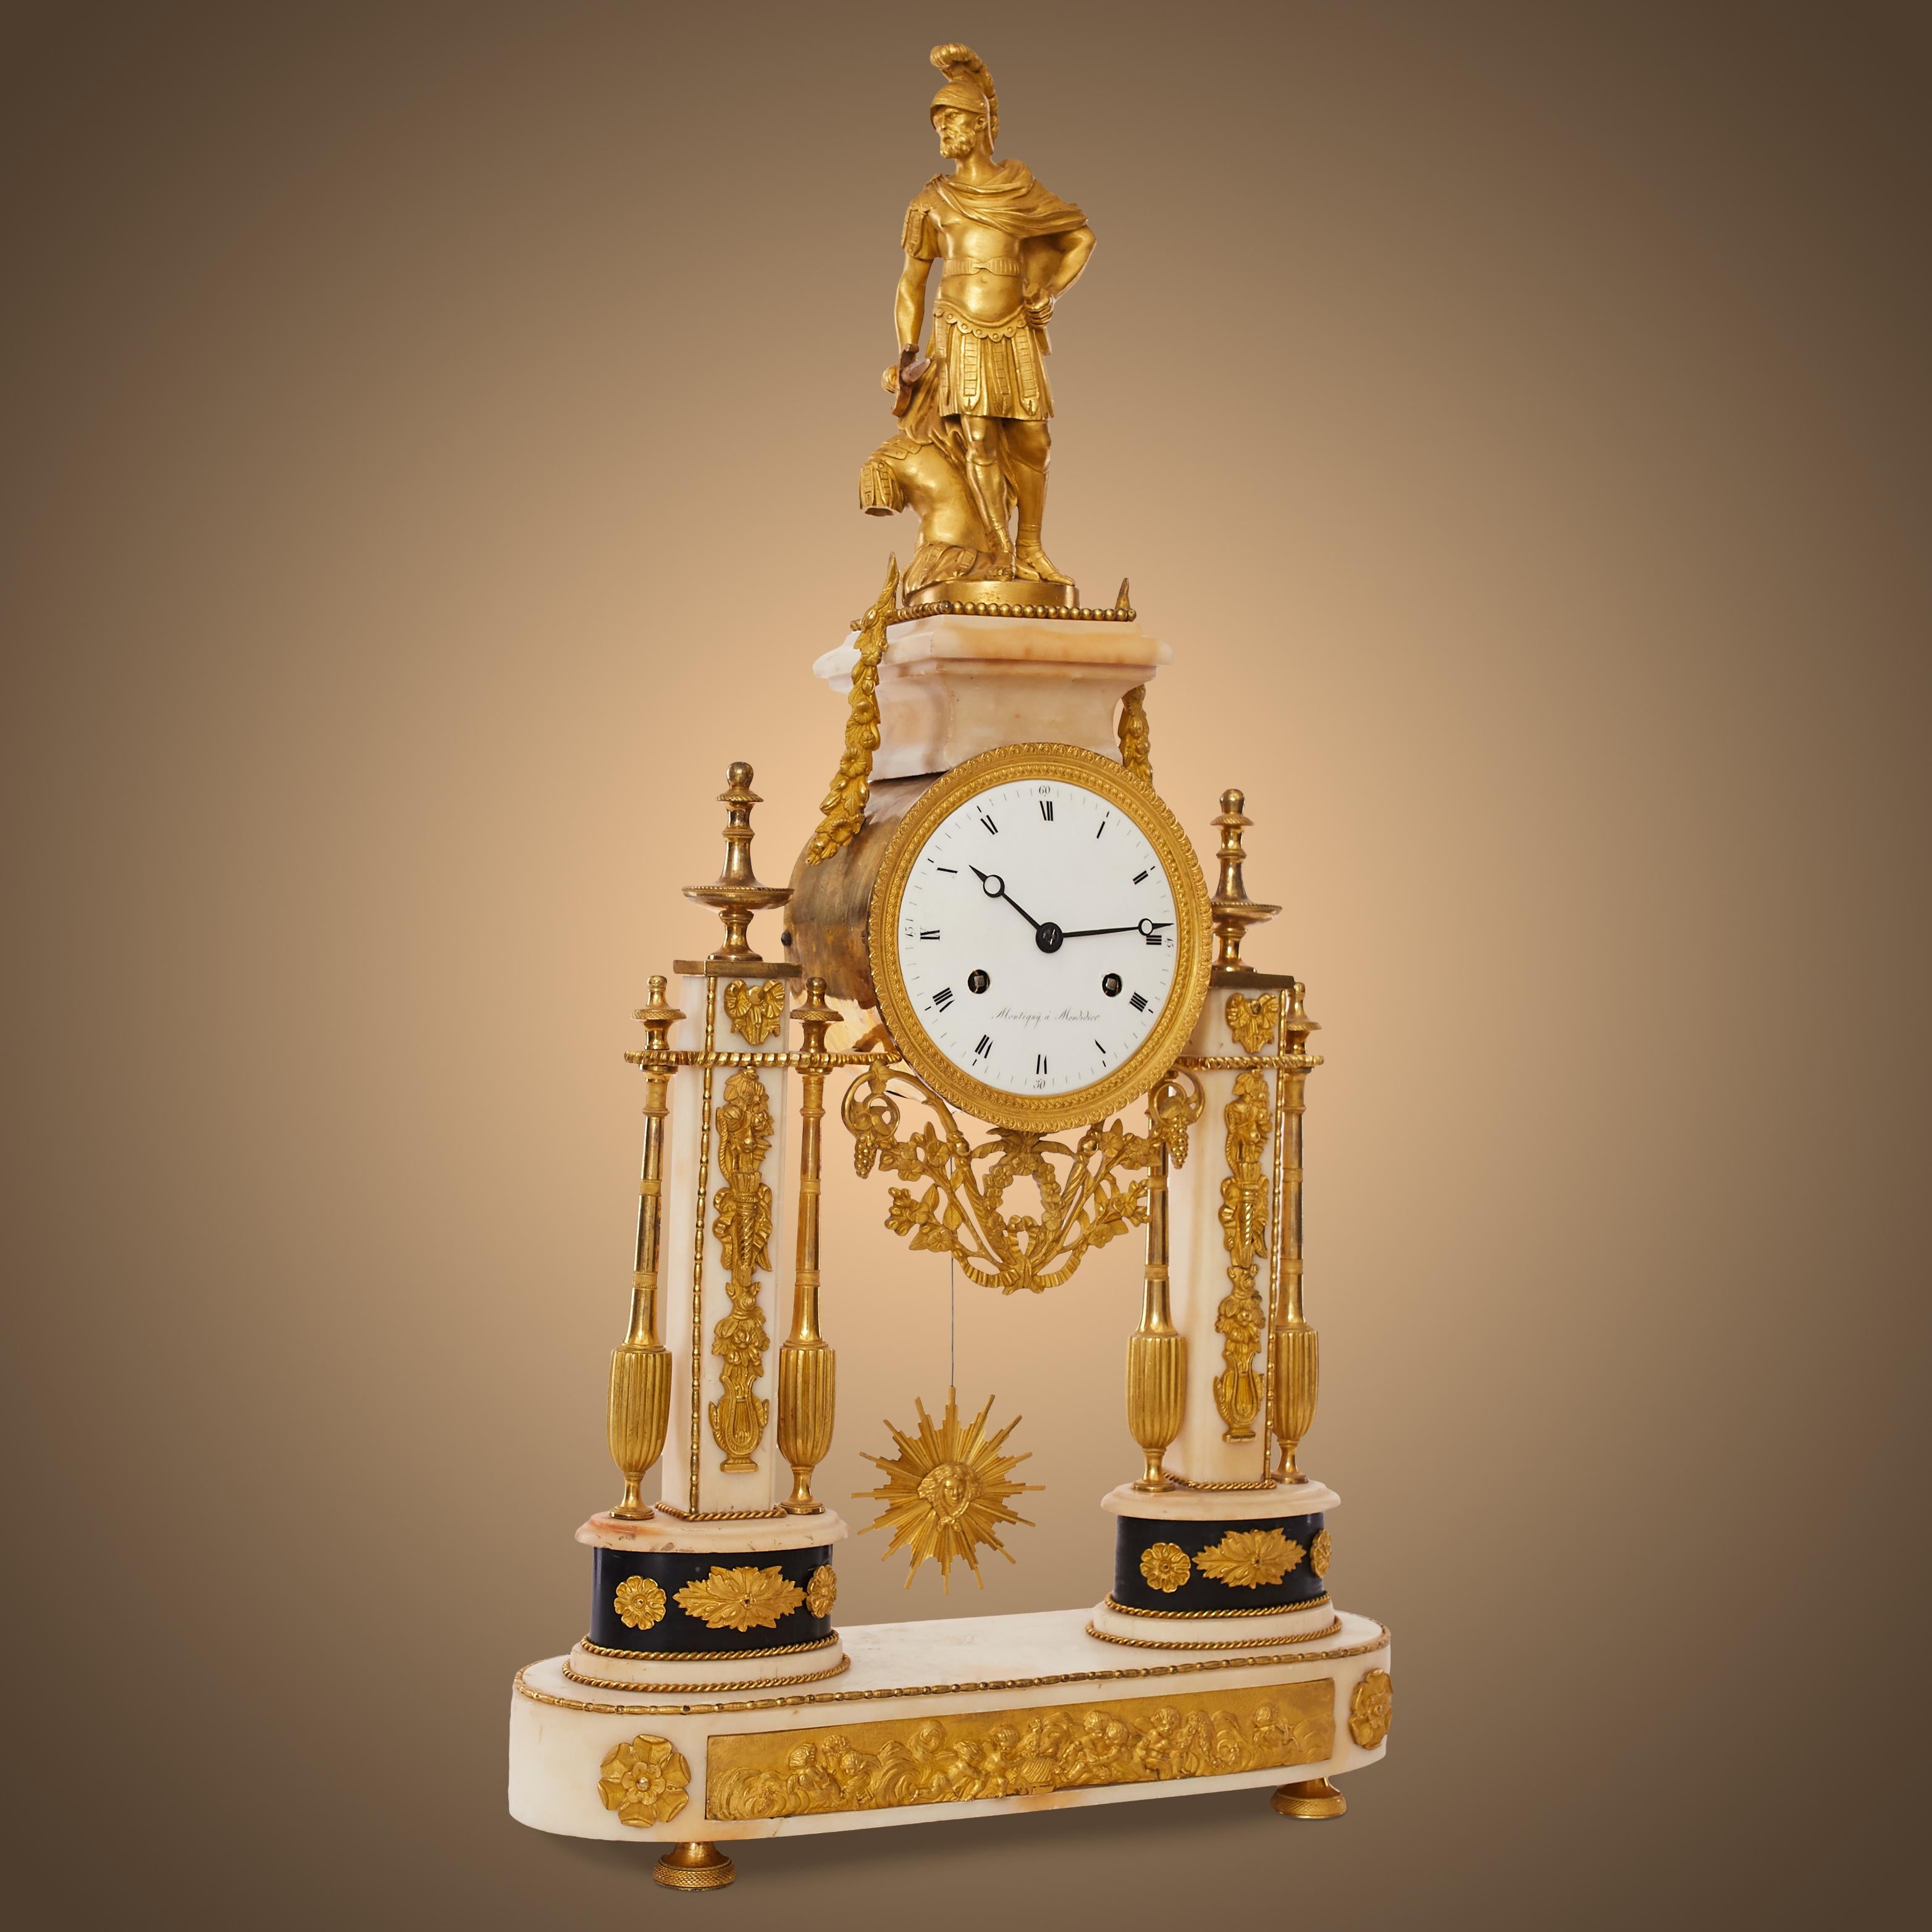 Louis XVI portico clock
Pendulum called 